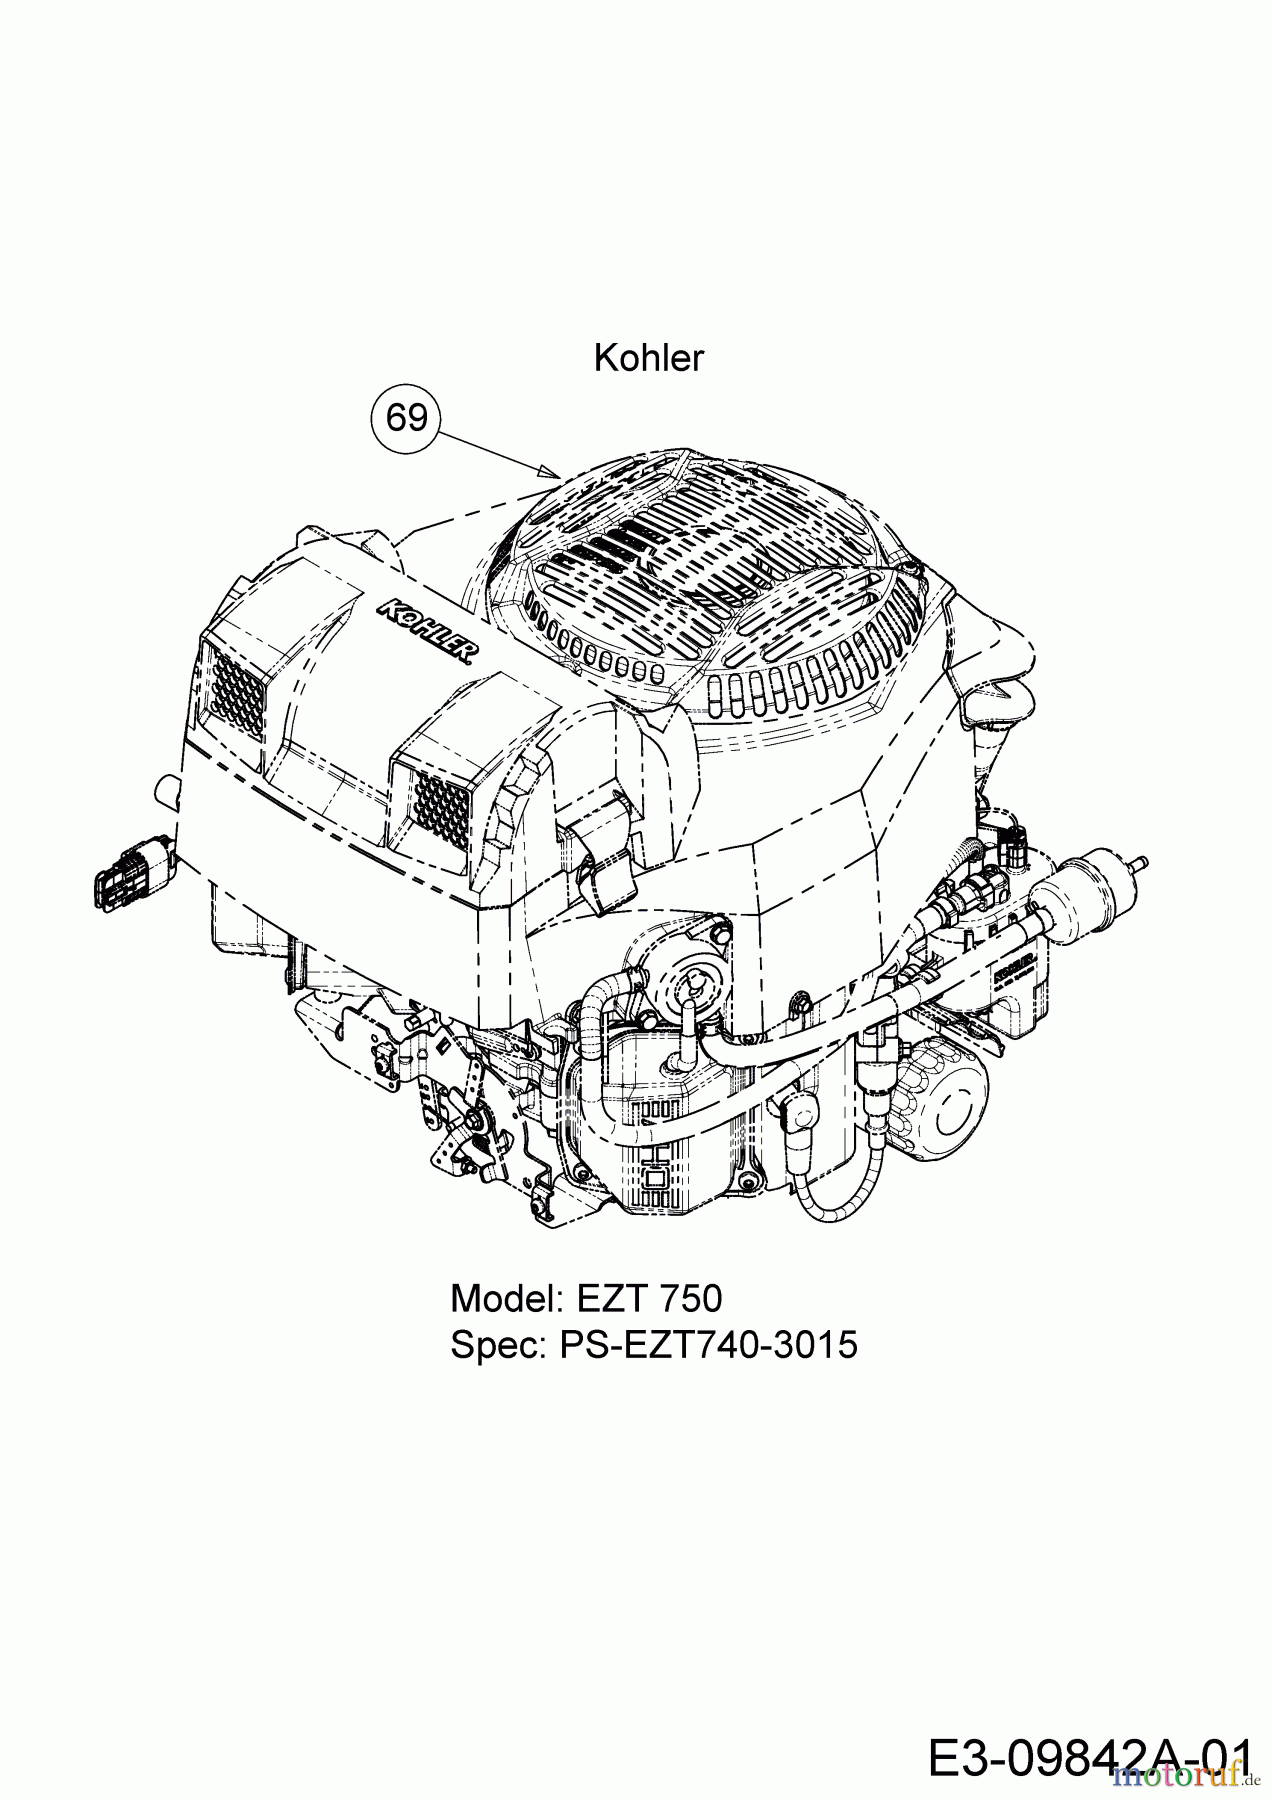  Cub Cadet Zero Turn Z1 137 53AWEFJA603  (2017) Engine Kohler